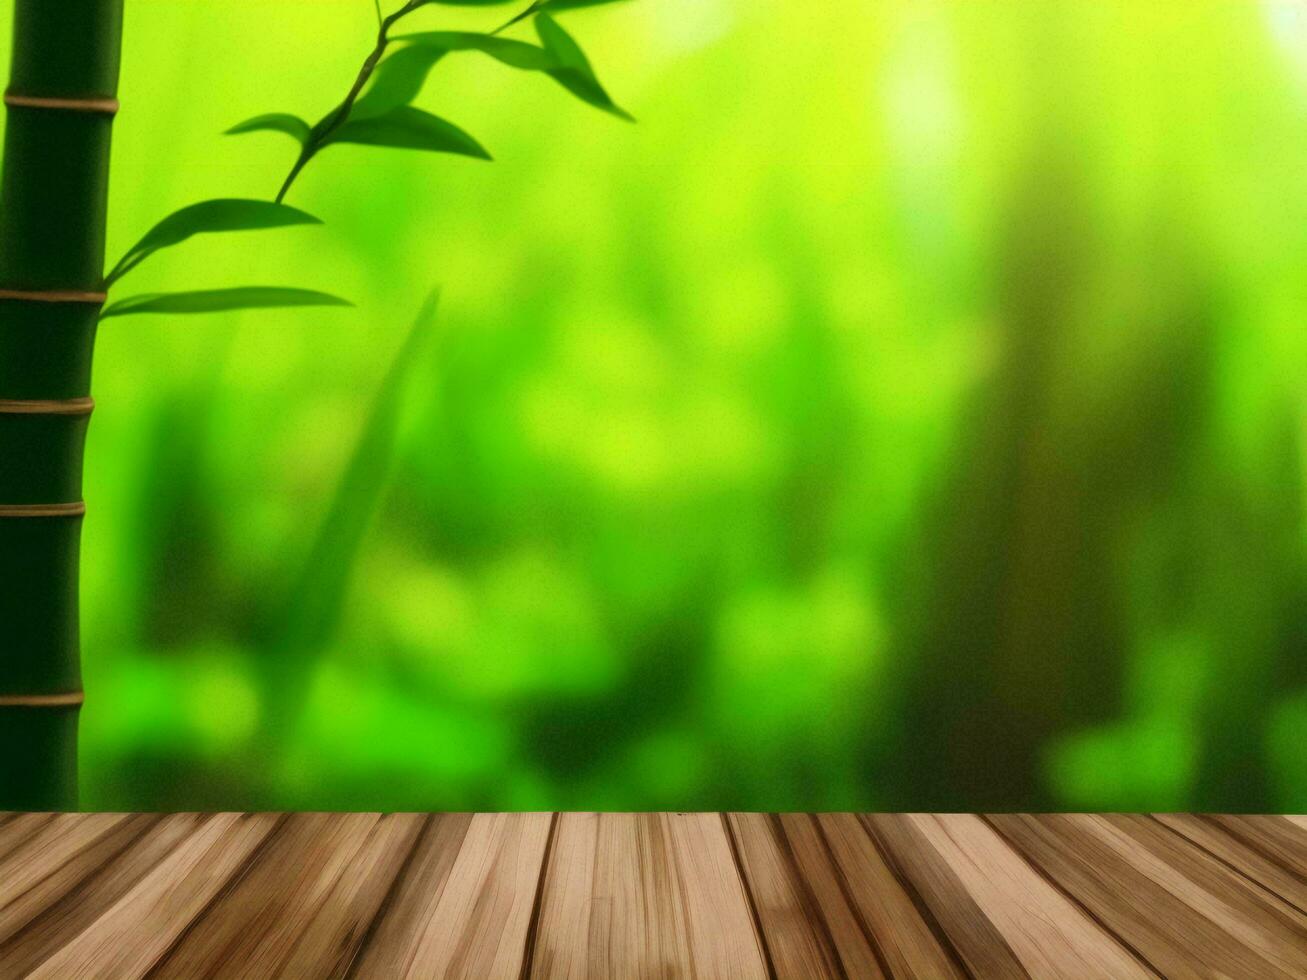 houten tafel Aan bamboe fabriek achtergrond ai gegenereerd foto